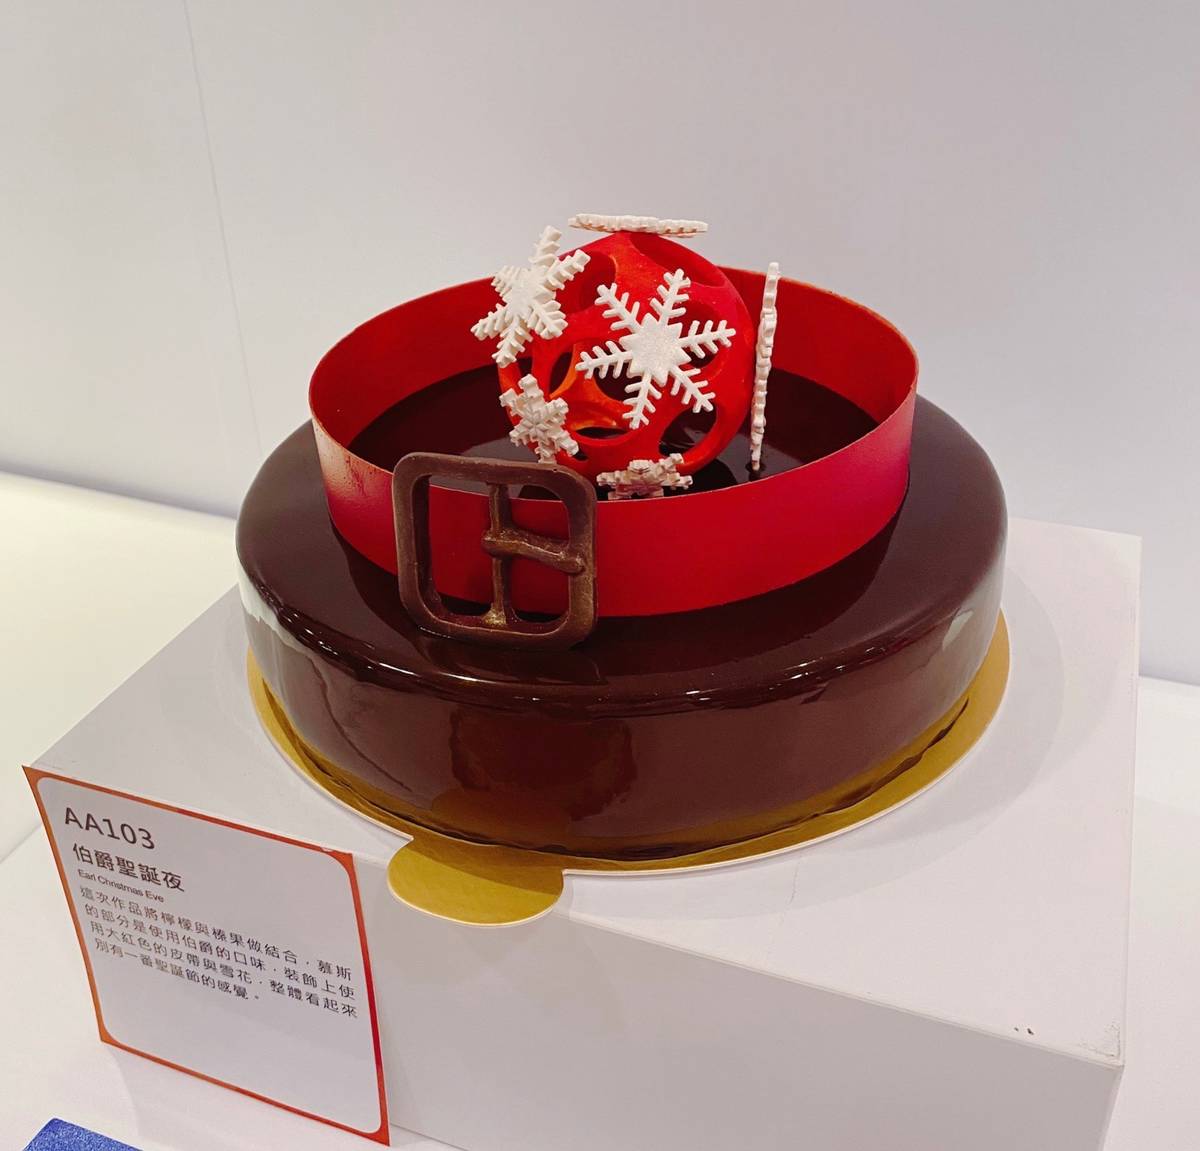 南臺科大餐旅系學生林易辰榮獲「2021台灣蛋糕協會聖誕節蛋糕技藝競賽」職業組慕斯蛋糕冠軍之作品-伯爵聖誕夜。